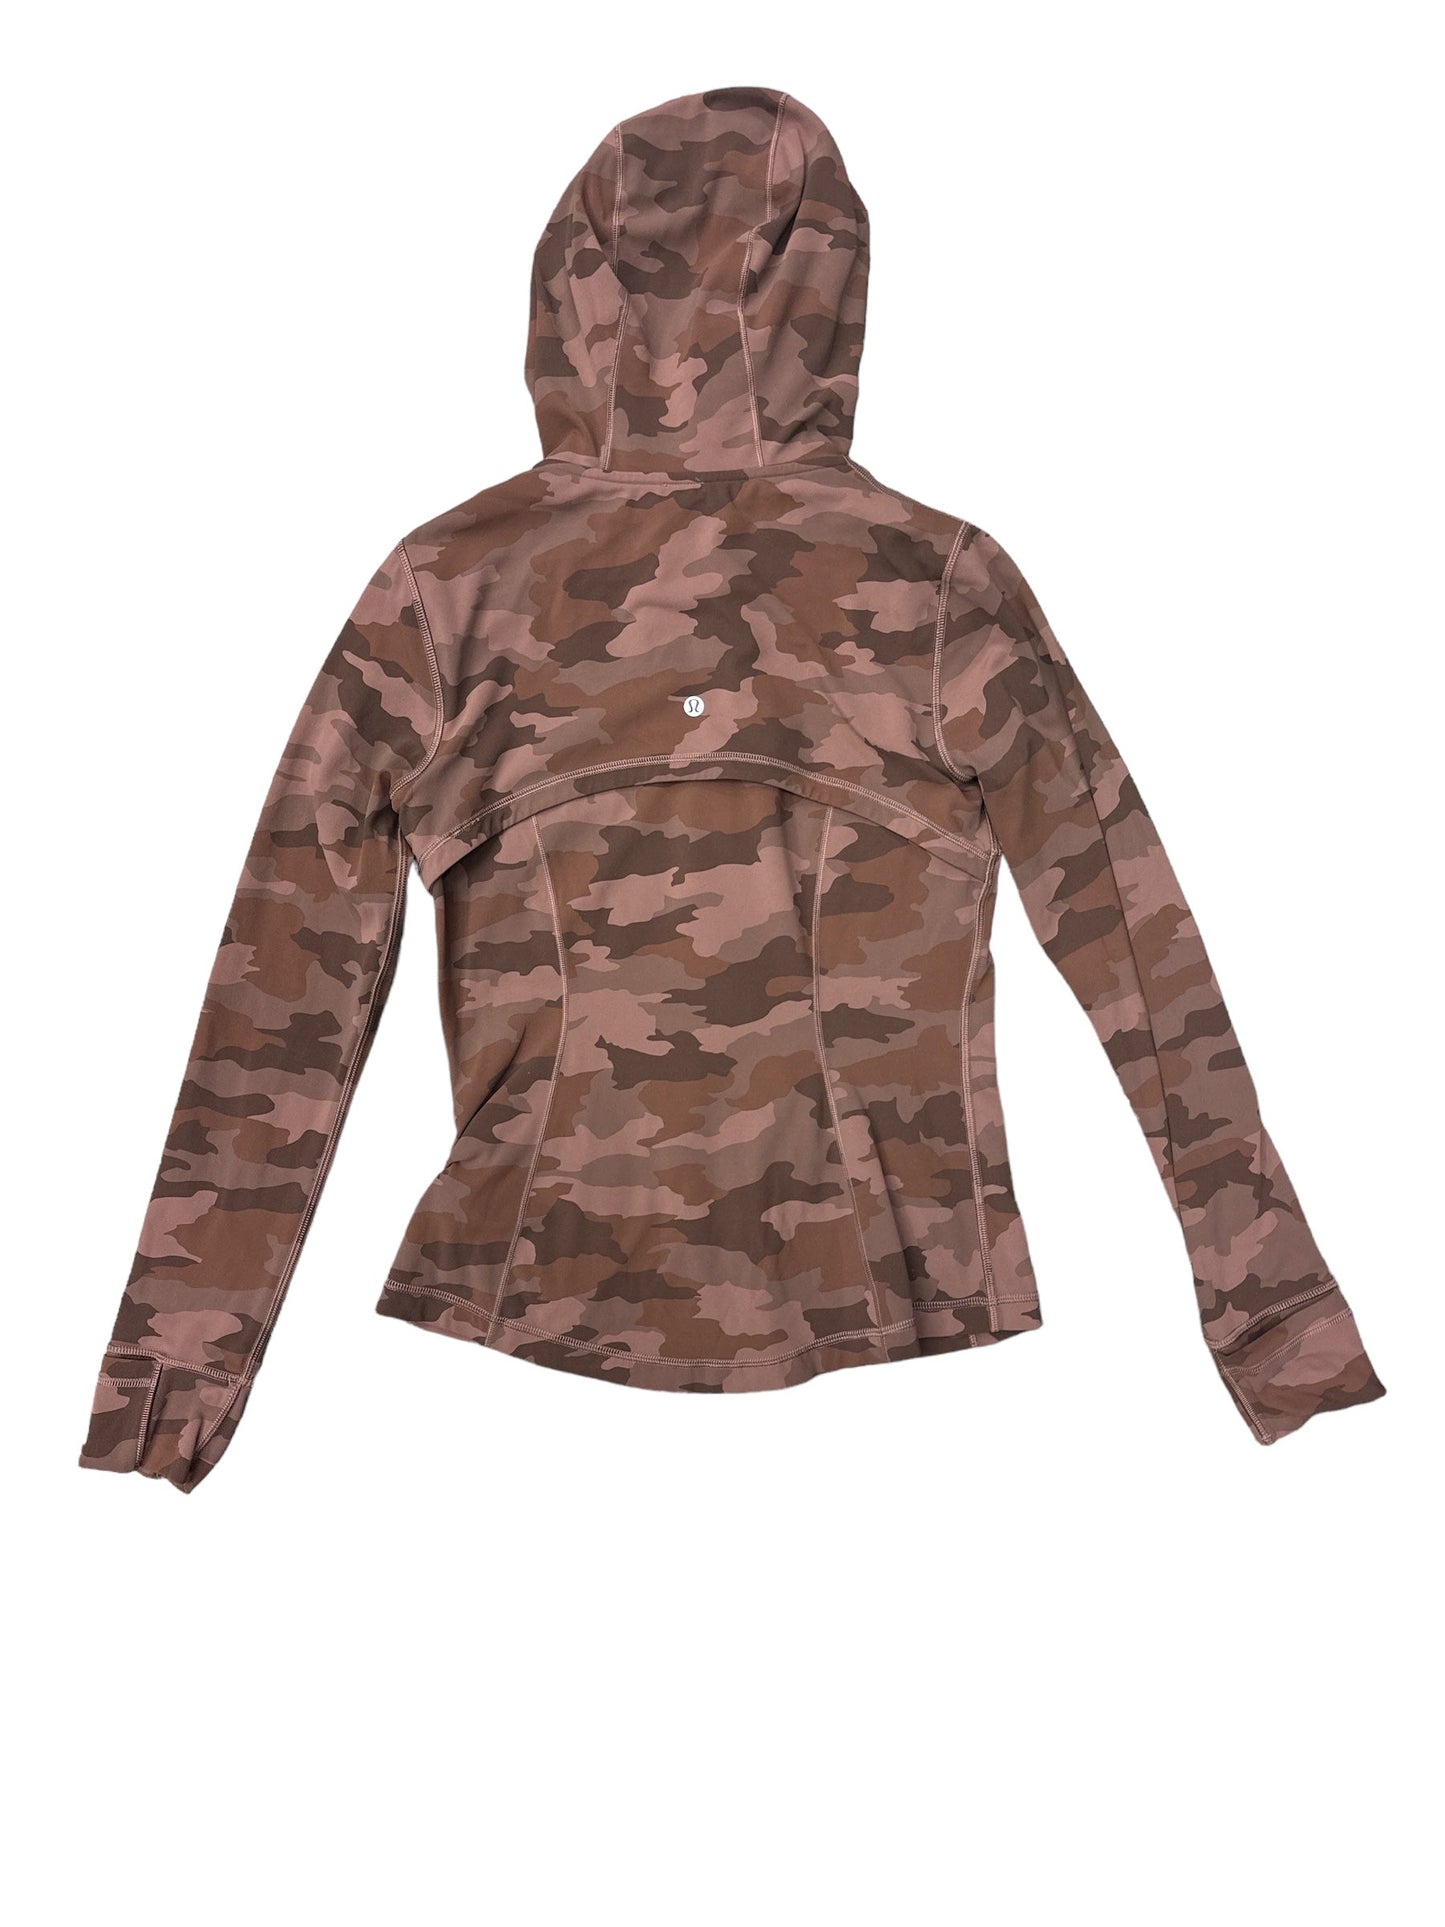 Camouflage Print Athletic Jacket Lululemon, Size 8